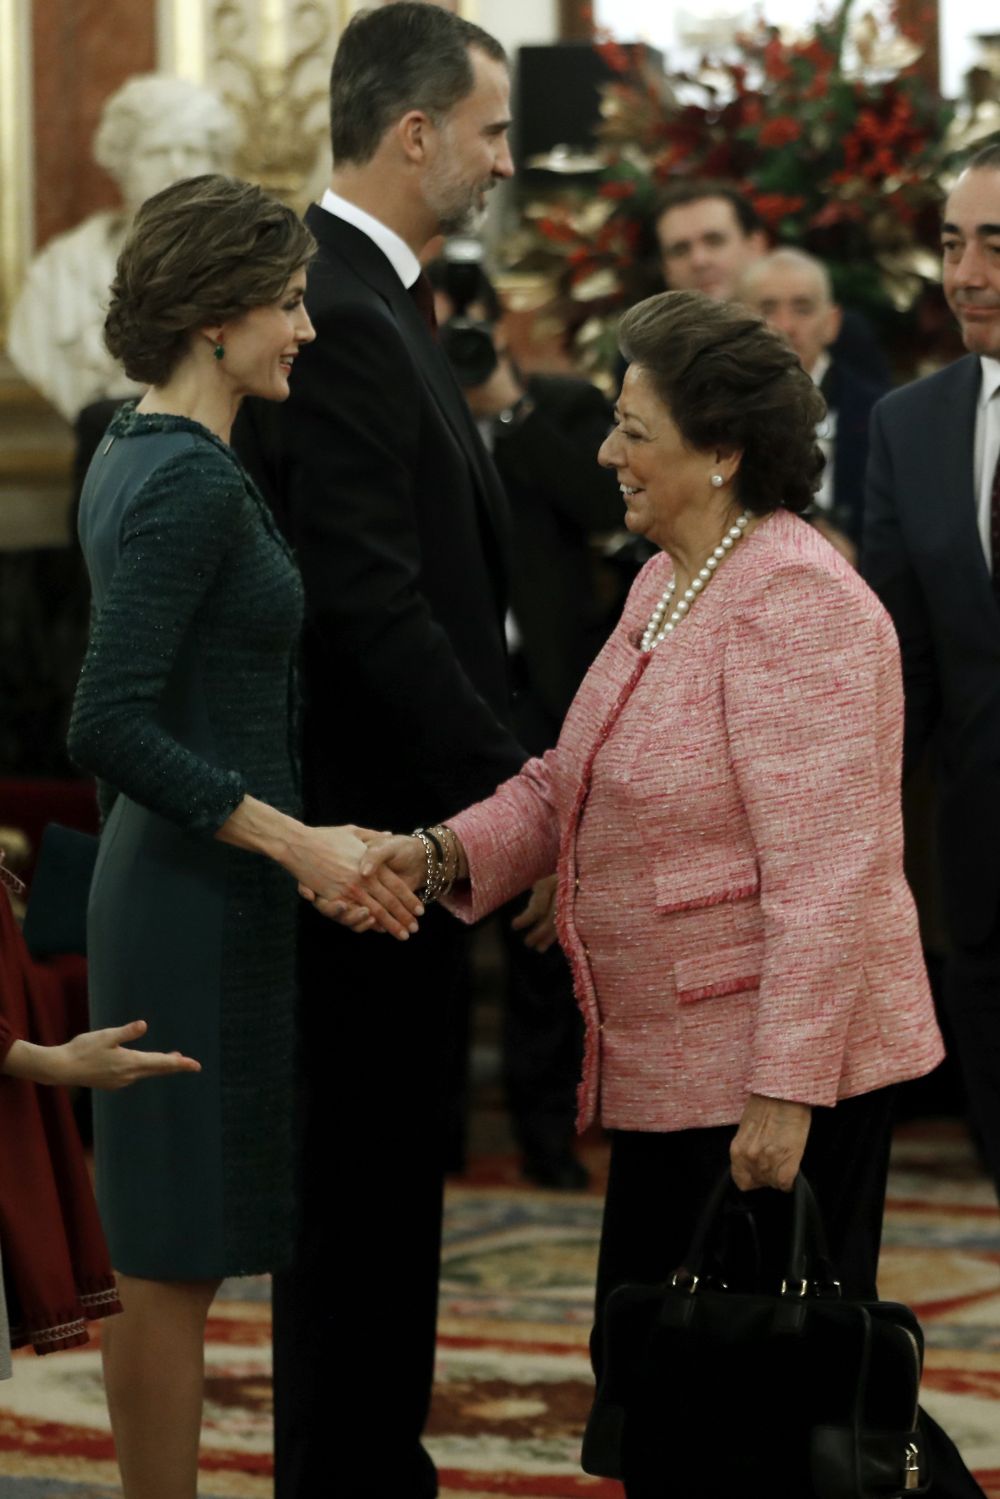 La Reina Letizia saluda a la senadora Rita Barberá, en el Salón de Pasos Perdidos del Congreso de los Diputados, junto al El Rey Felipe VI, durante la solemne ceremonia de apertura de las Cortes en la XII Legislatura, la pasada semana.